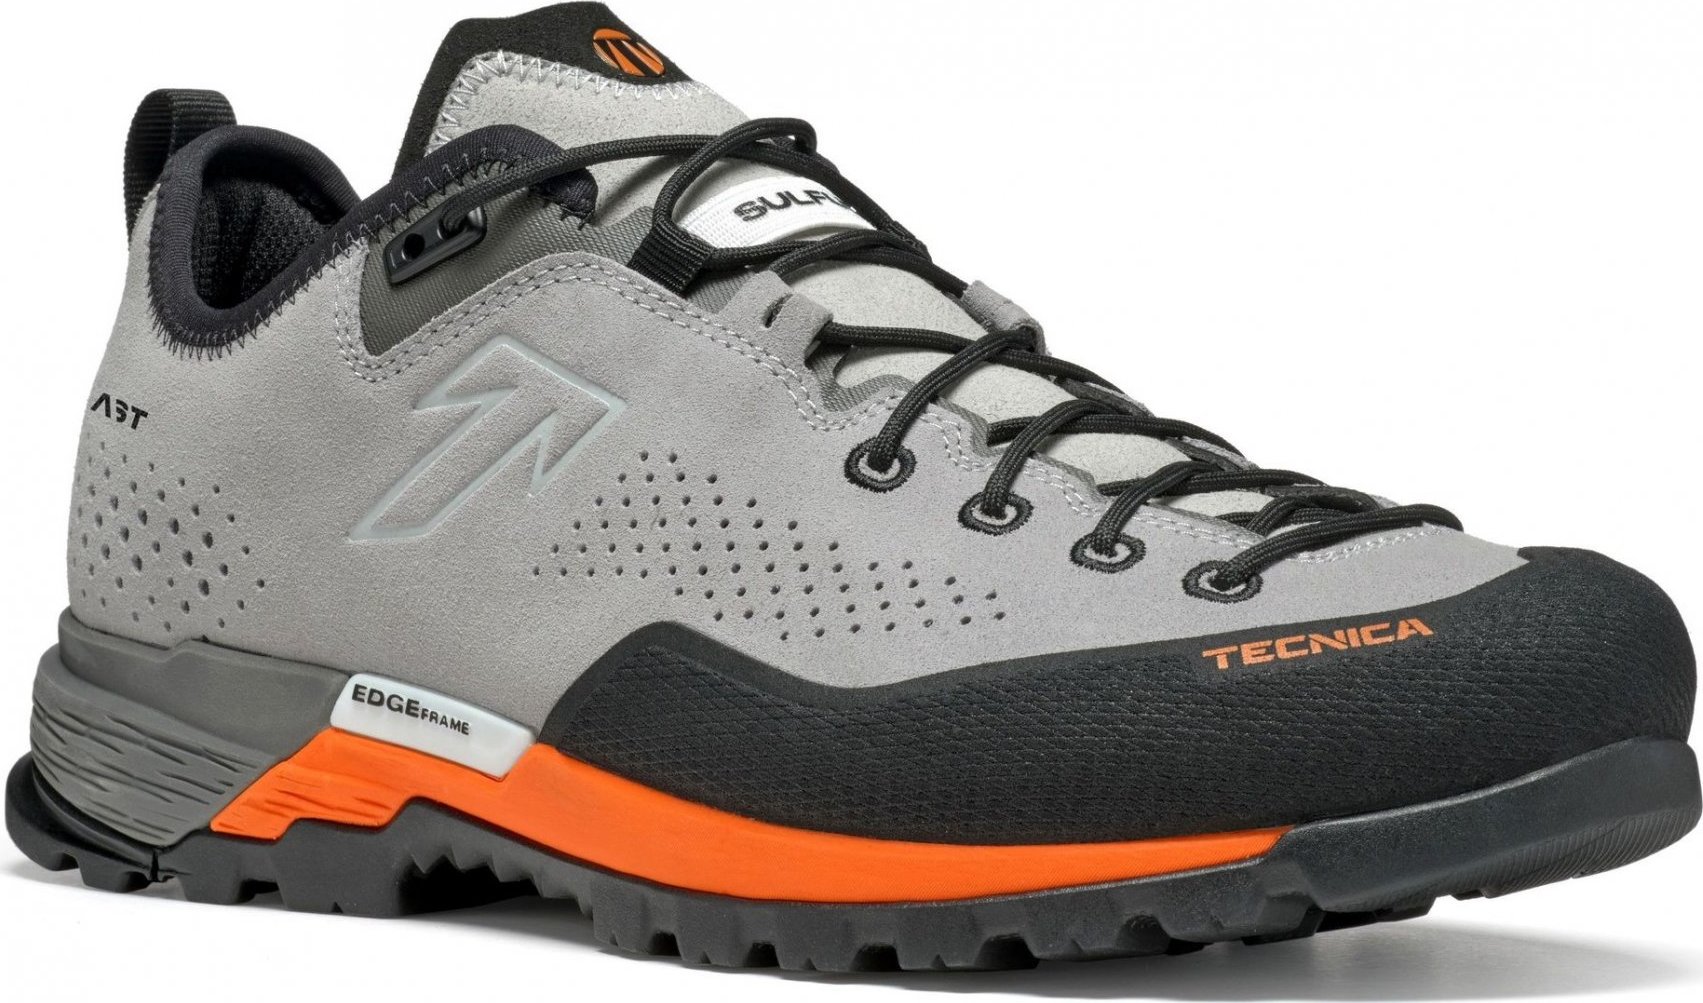 Pánské trekové boty TECNICA Sulfur Ms, 001 soft grey/ultra orange Velikost: 42